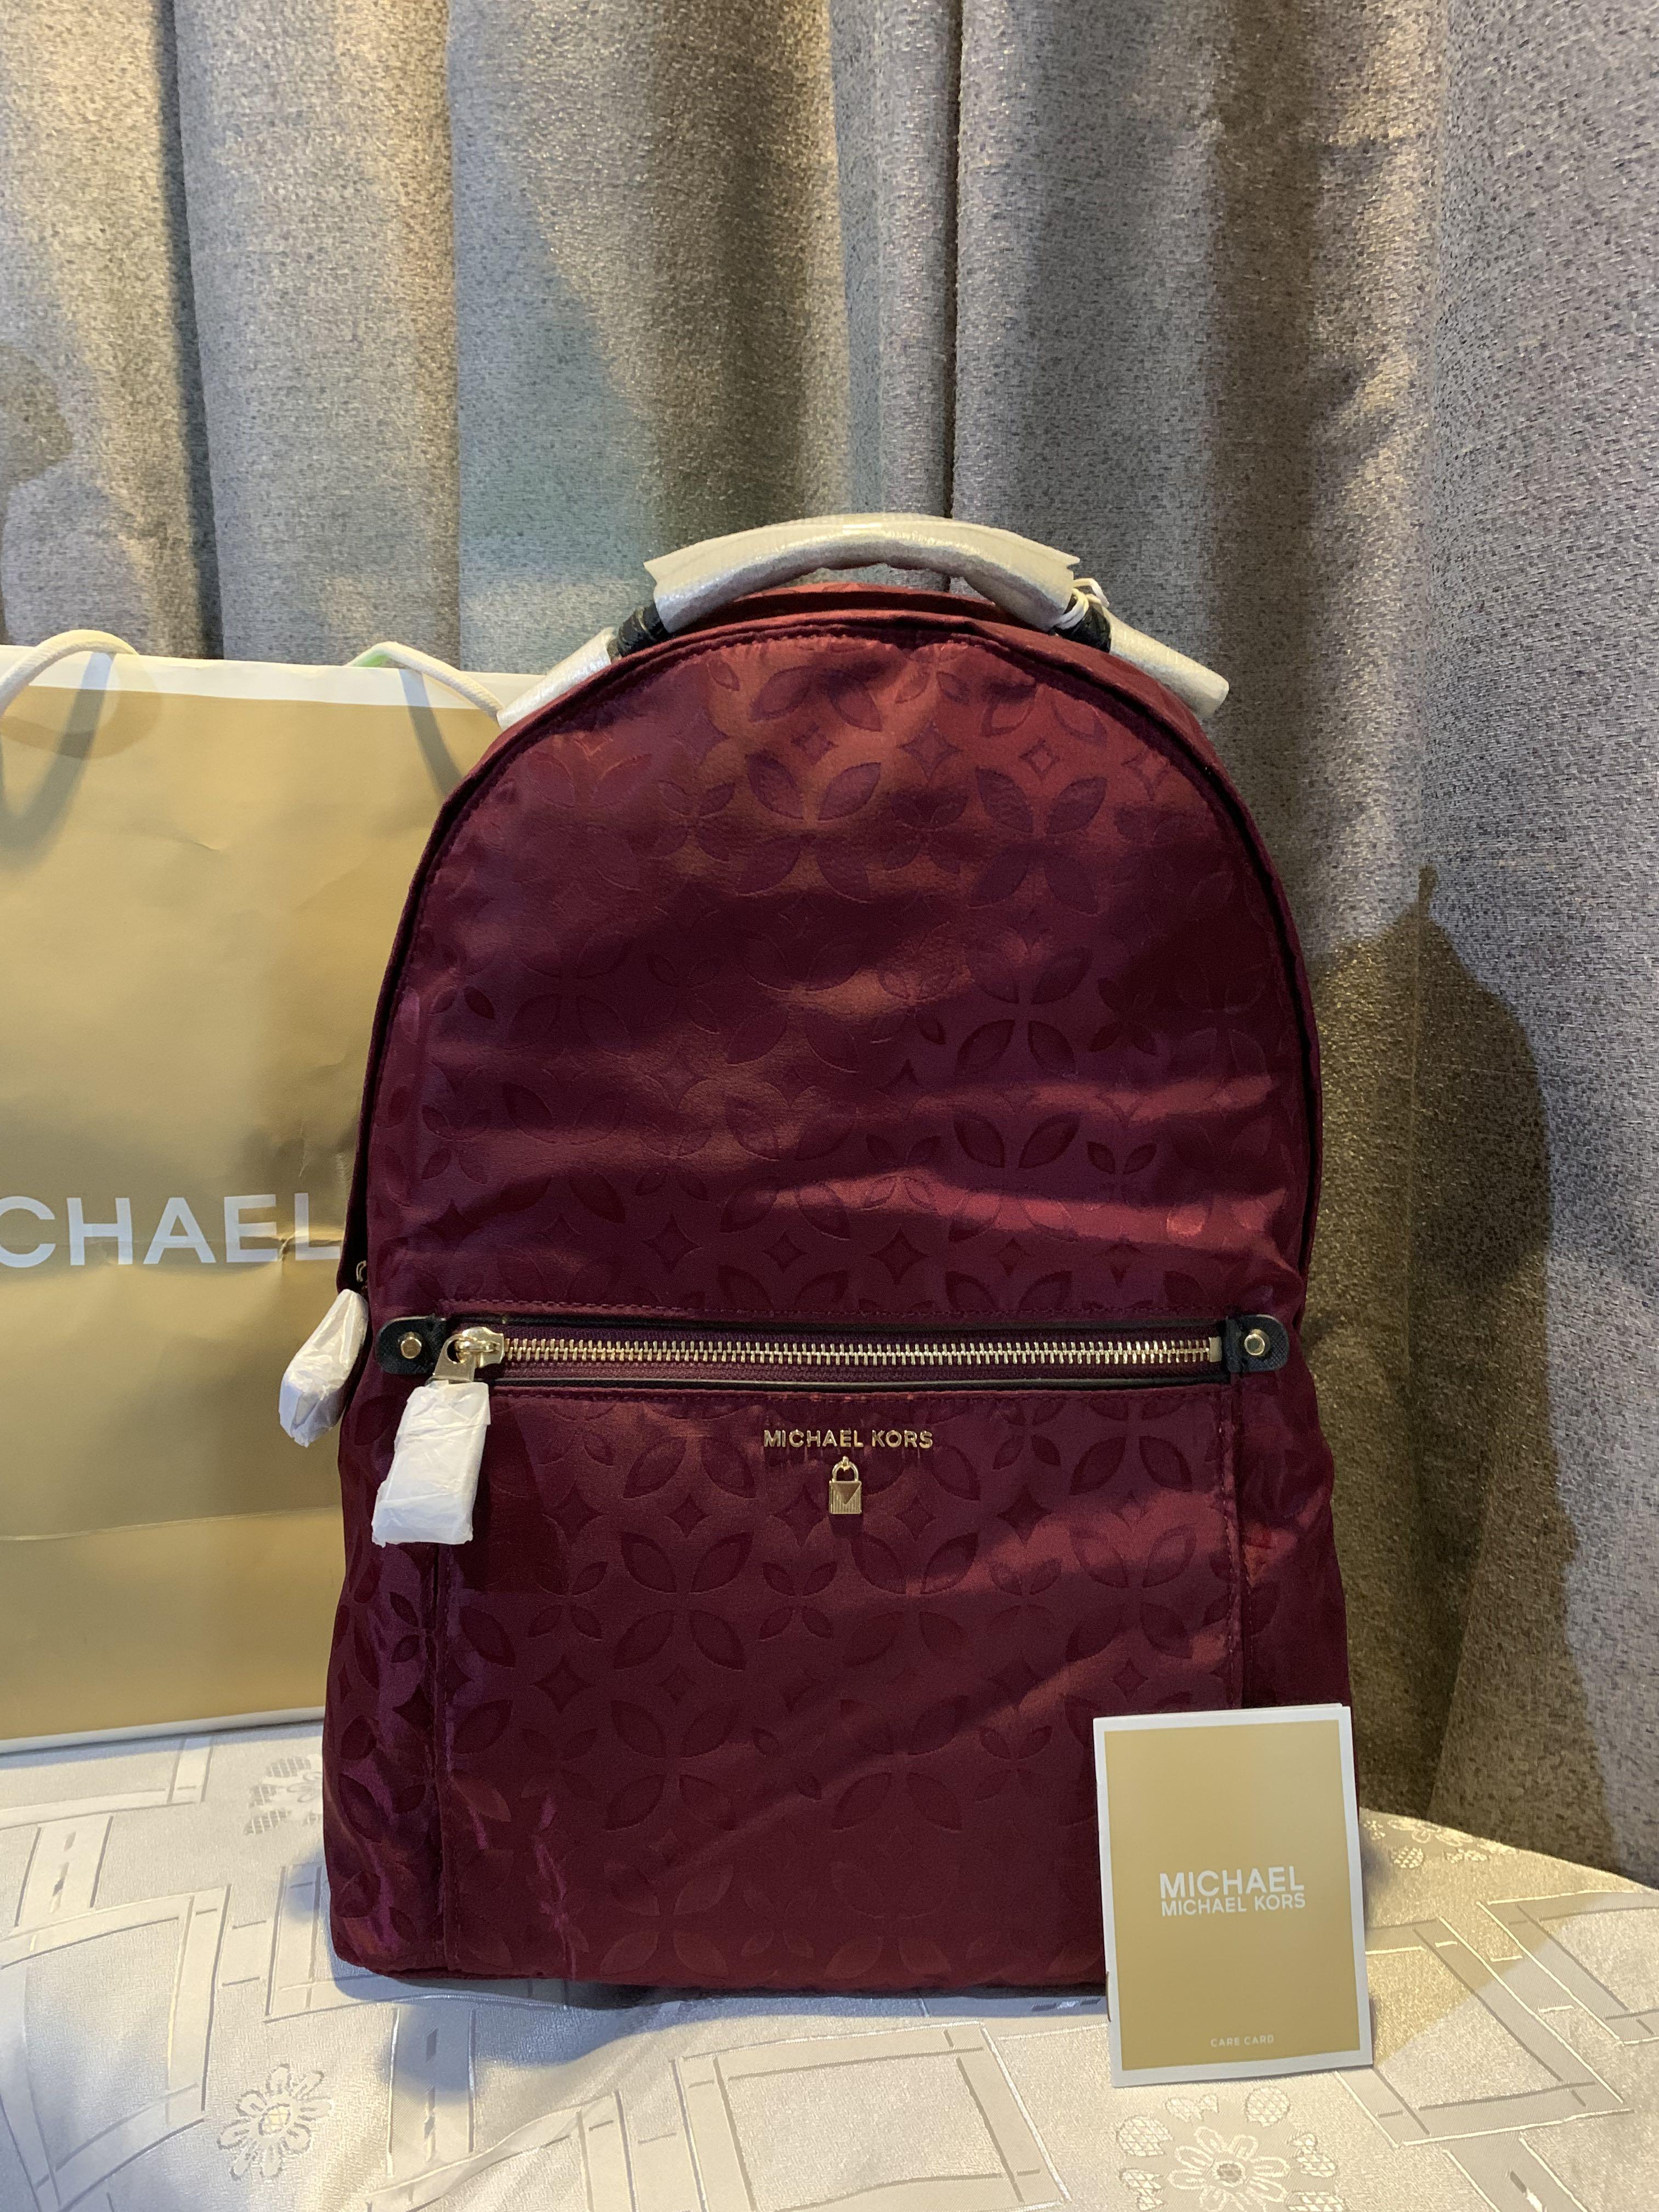 Michael Kors Kelsey Nylon Backpack 179  eBay